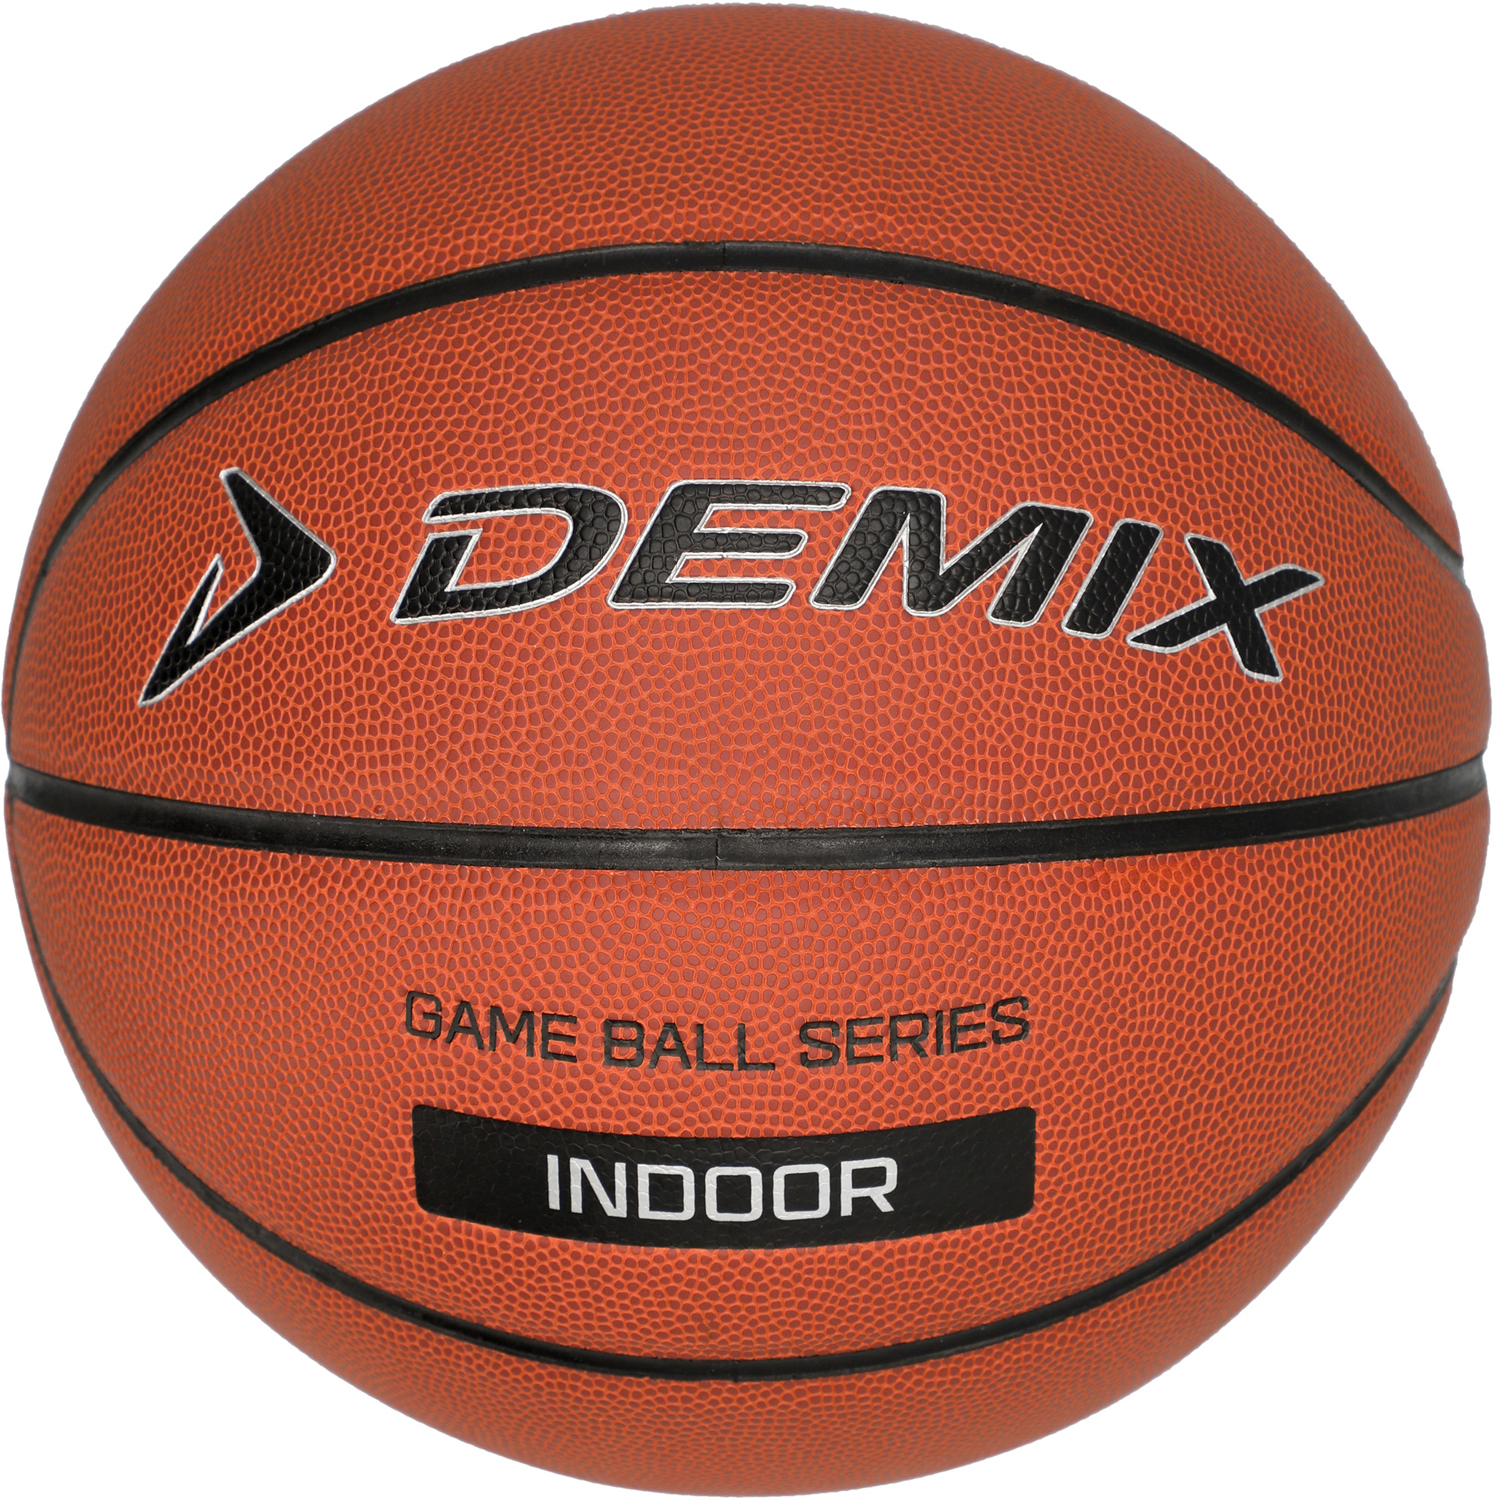 Баскетбольный мяч демикс